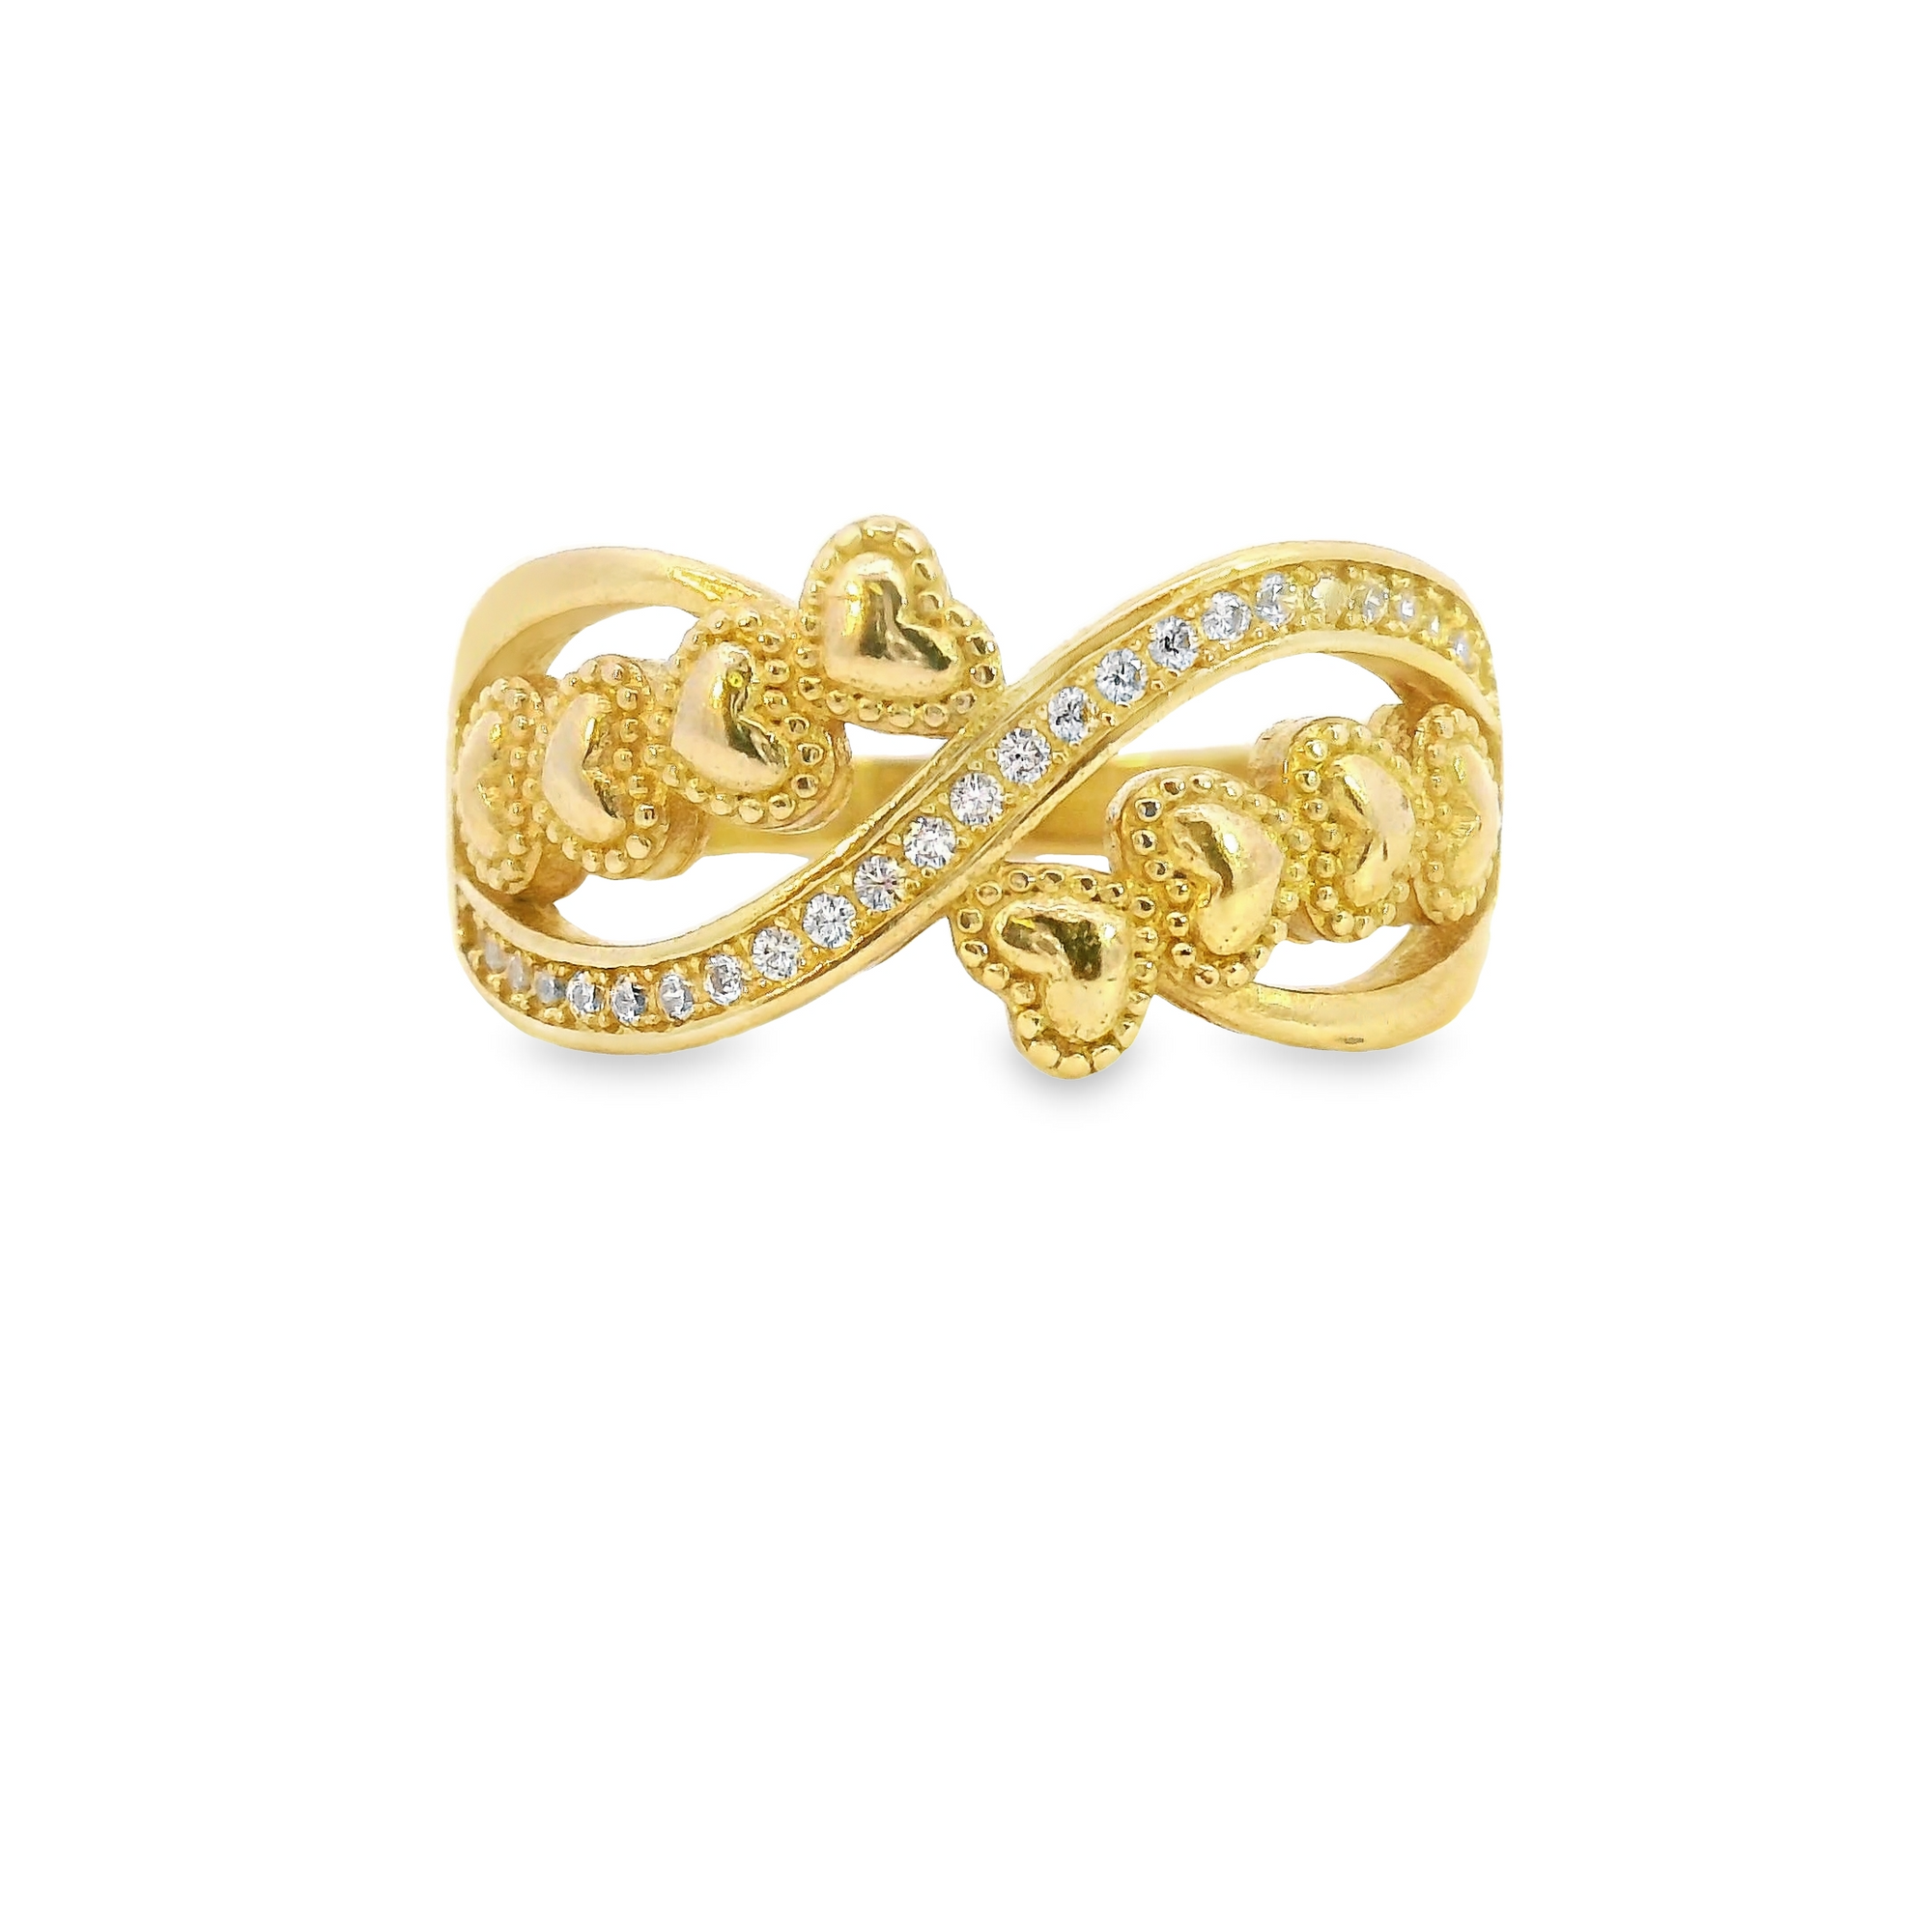 10K Real Gold Heart CZ Fancy Ring for Women